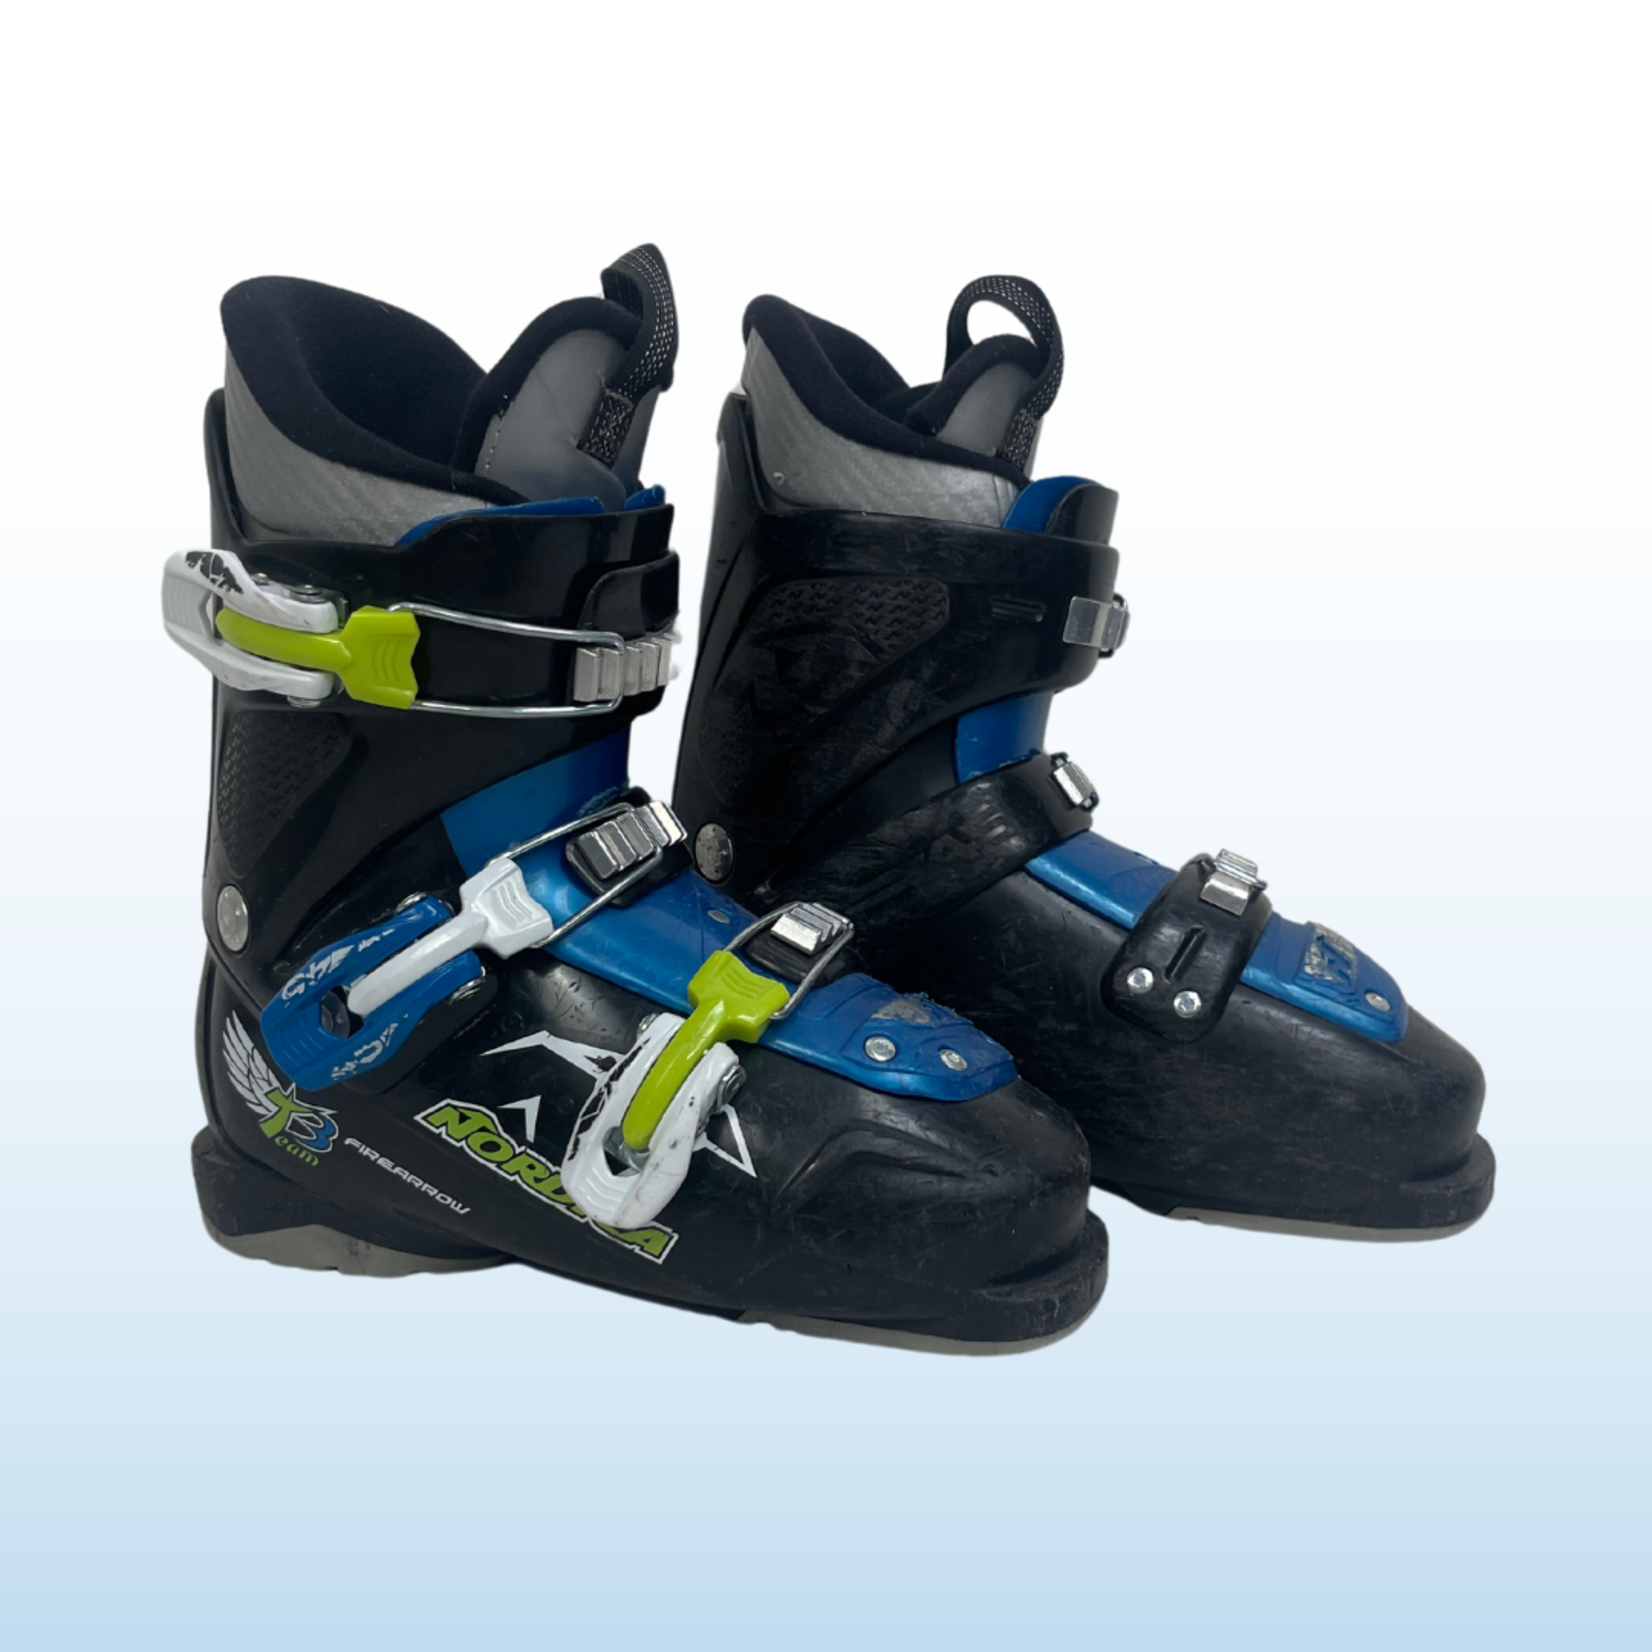 Nordica Nordica Firearrow Team T3 Kids Ski Boots, Size 24